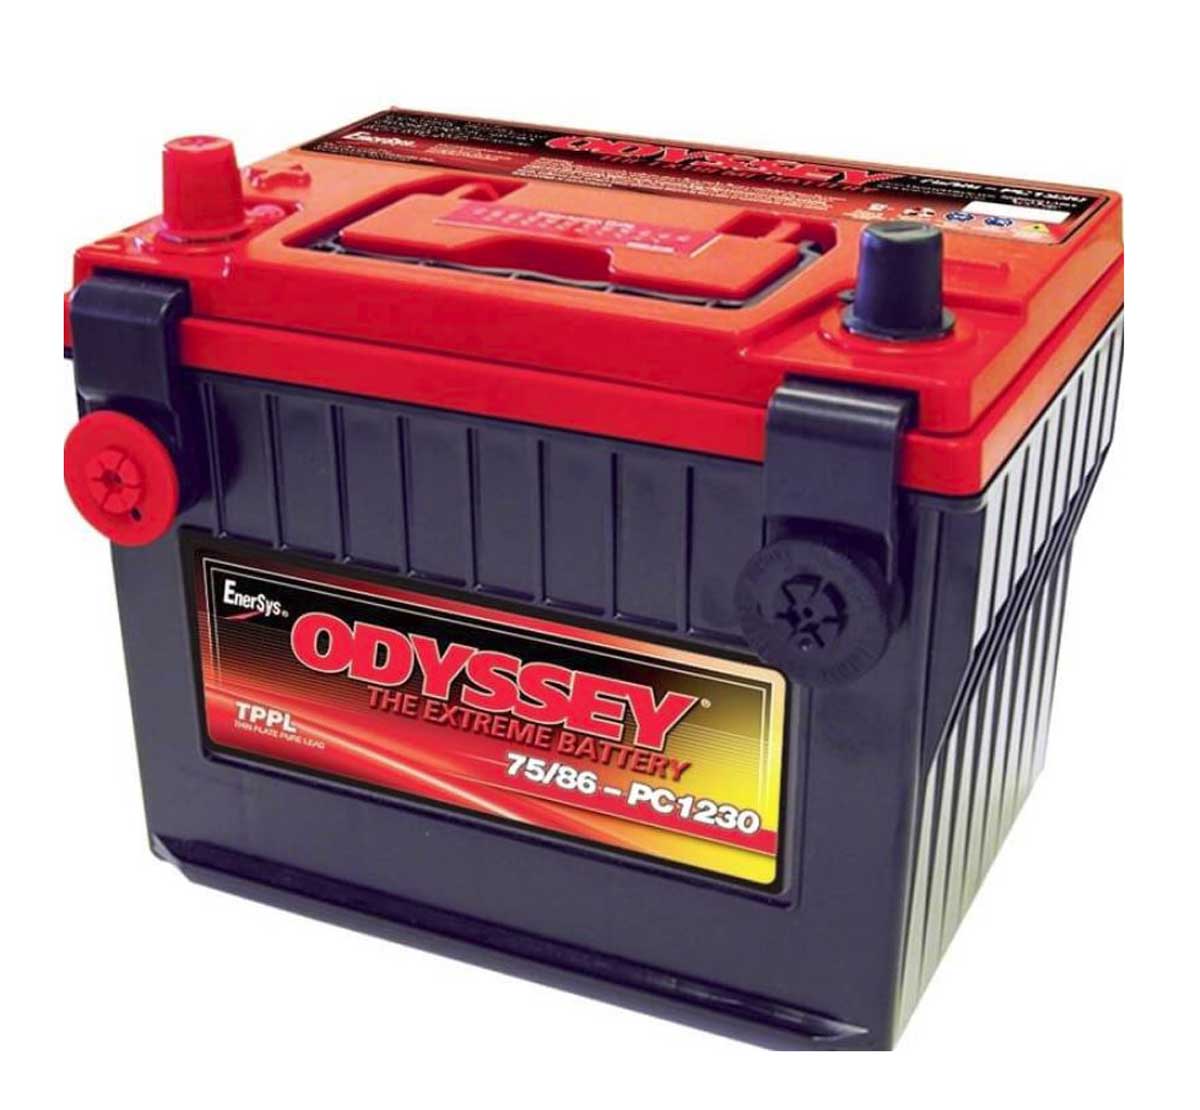 Odyssey PC1230 Extreme Starter Battery